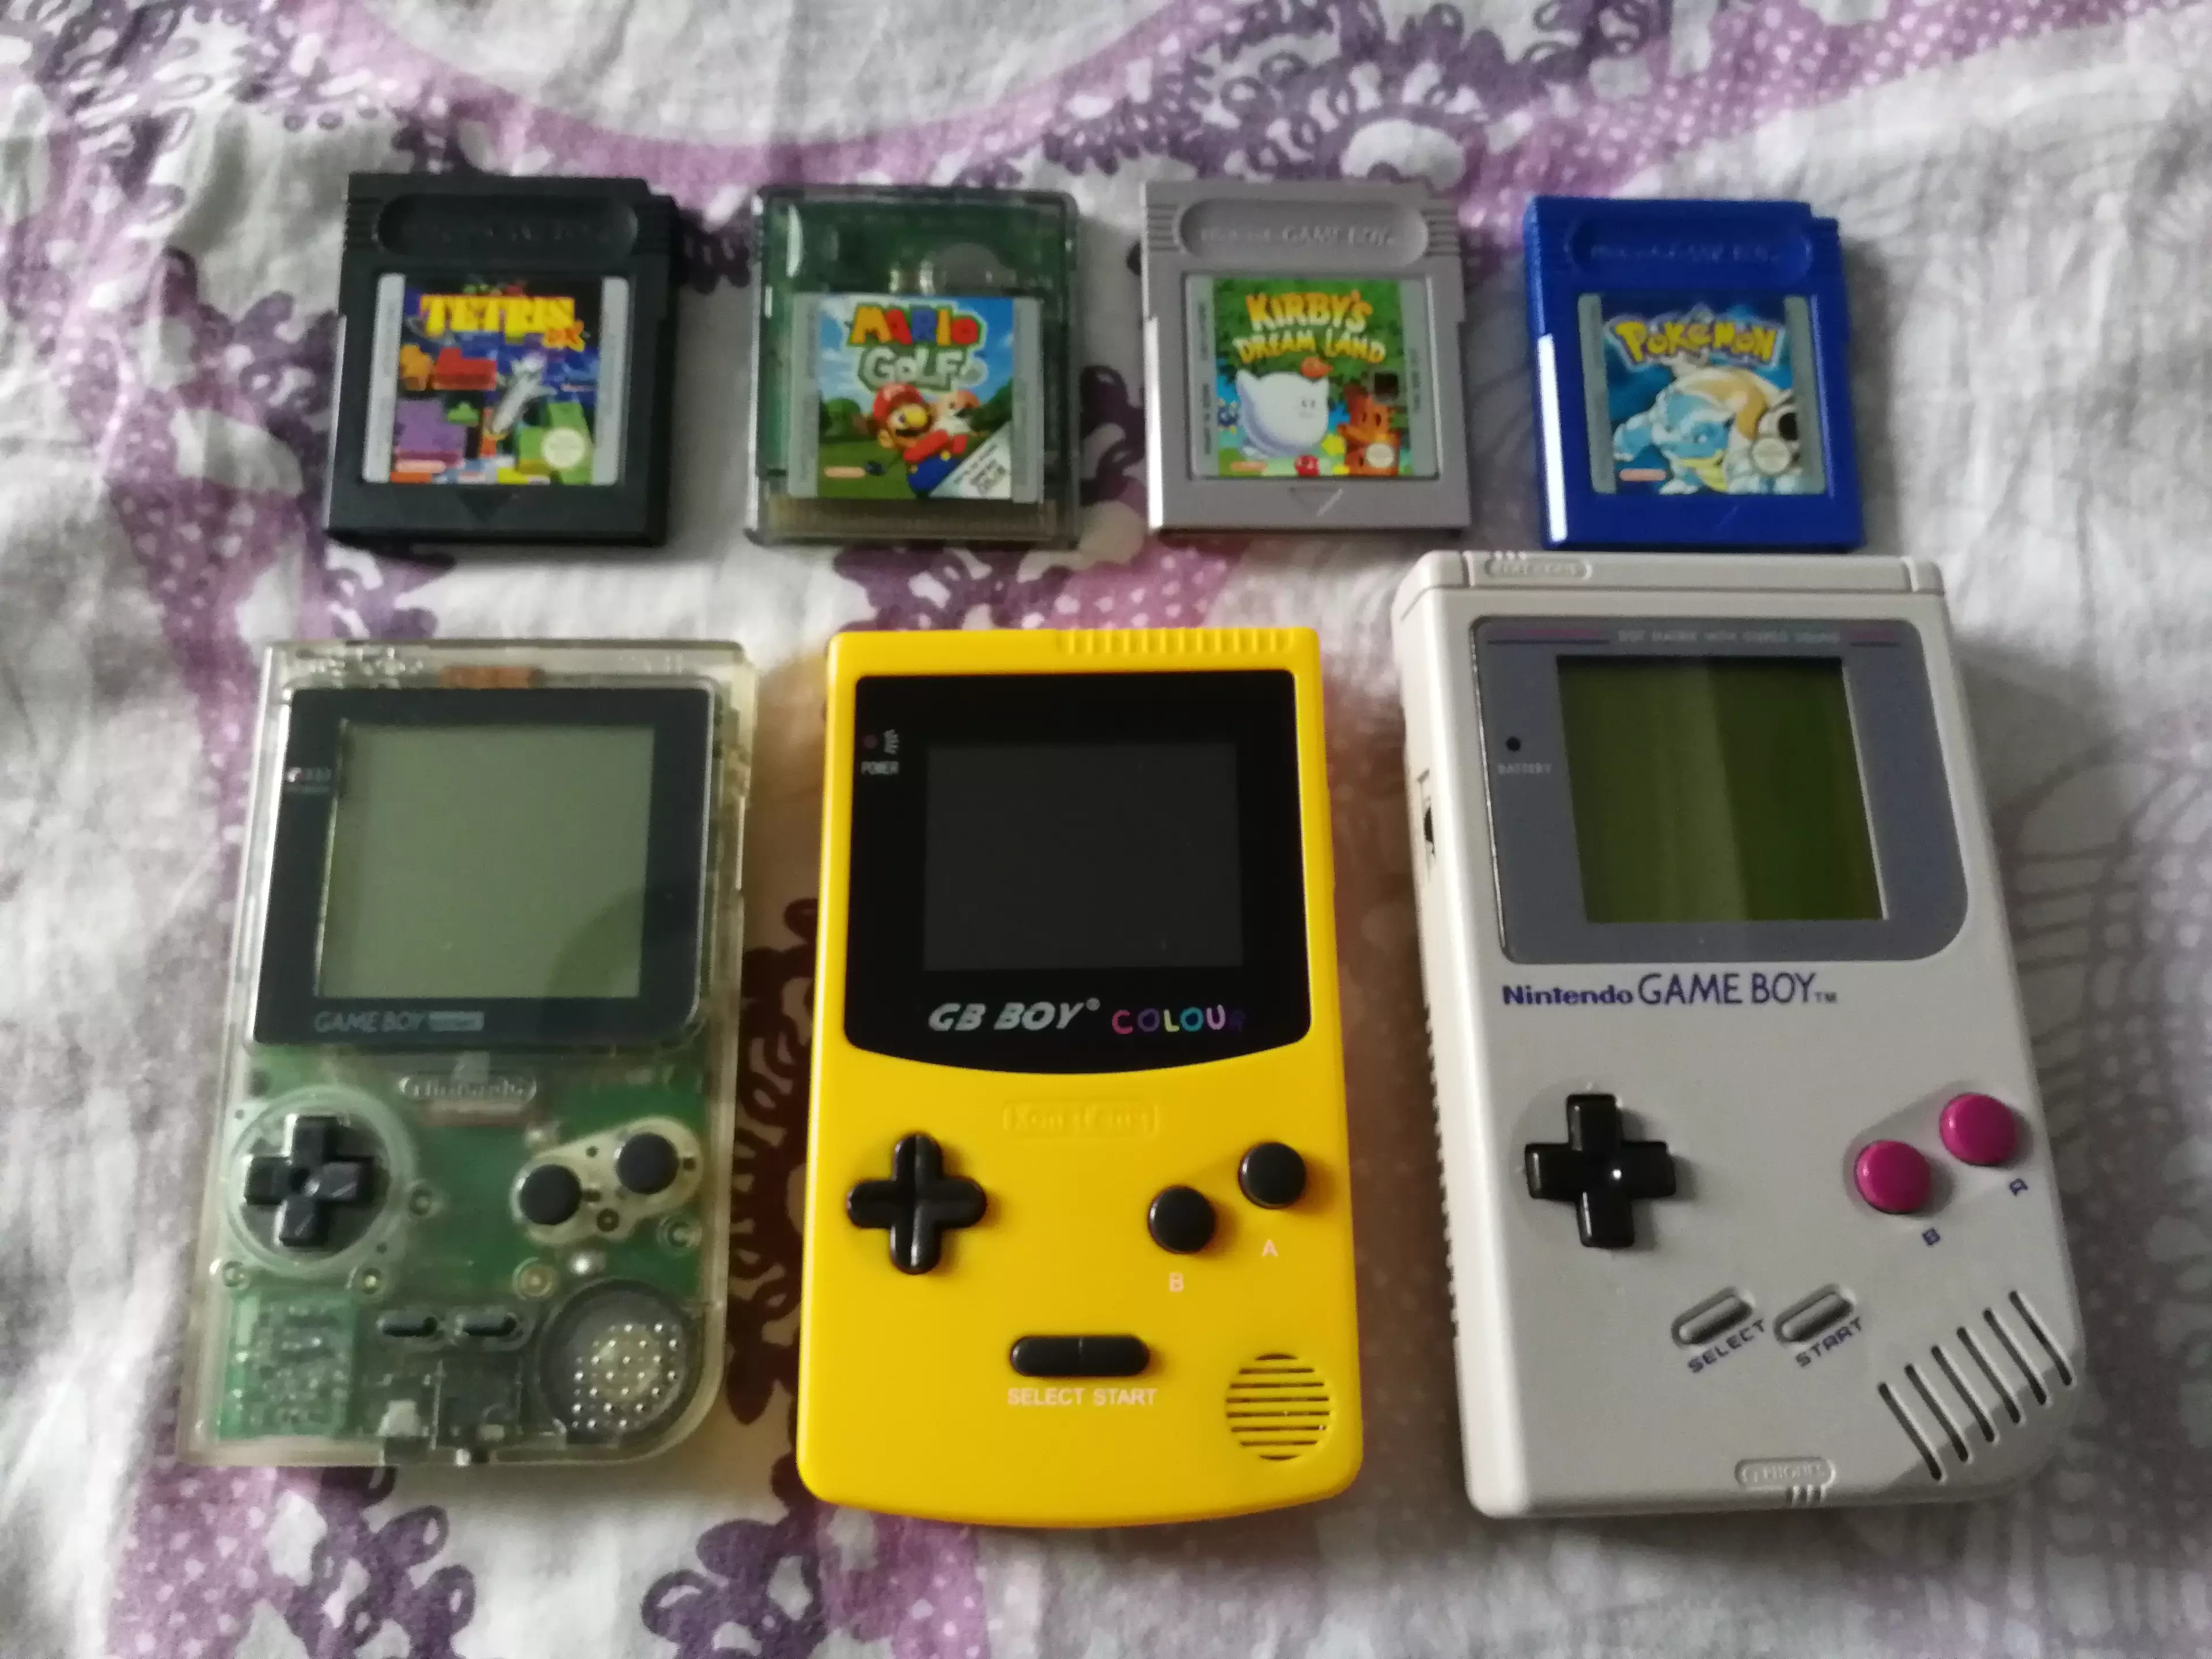 The GB Boy Colour next to a Pocket and original Game Boy /